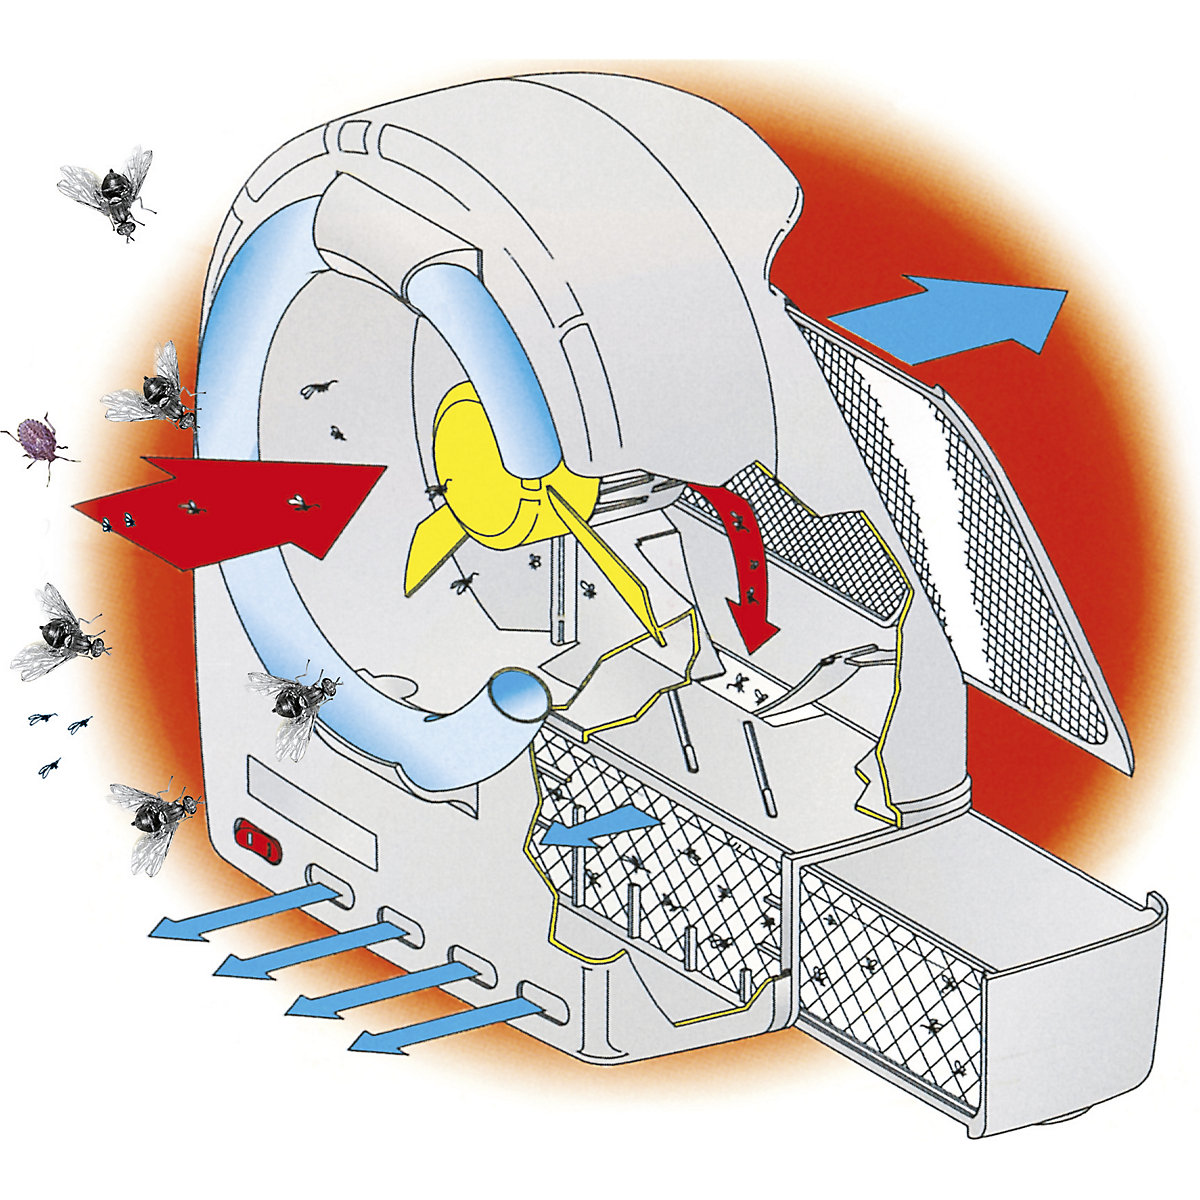 Ventilator-insectenvanger (Productafbeelding 2)-1